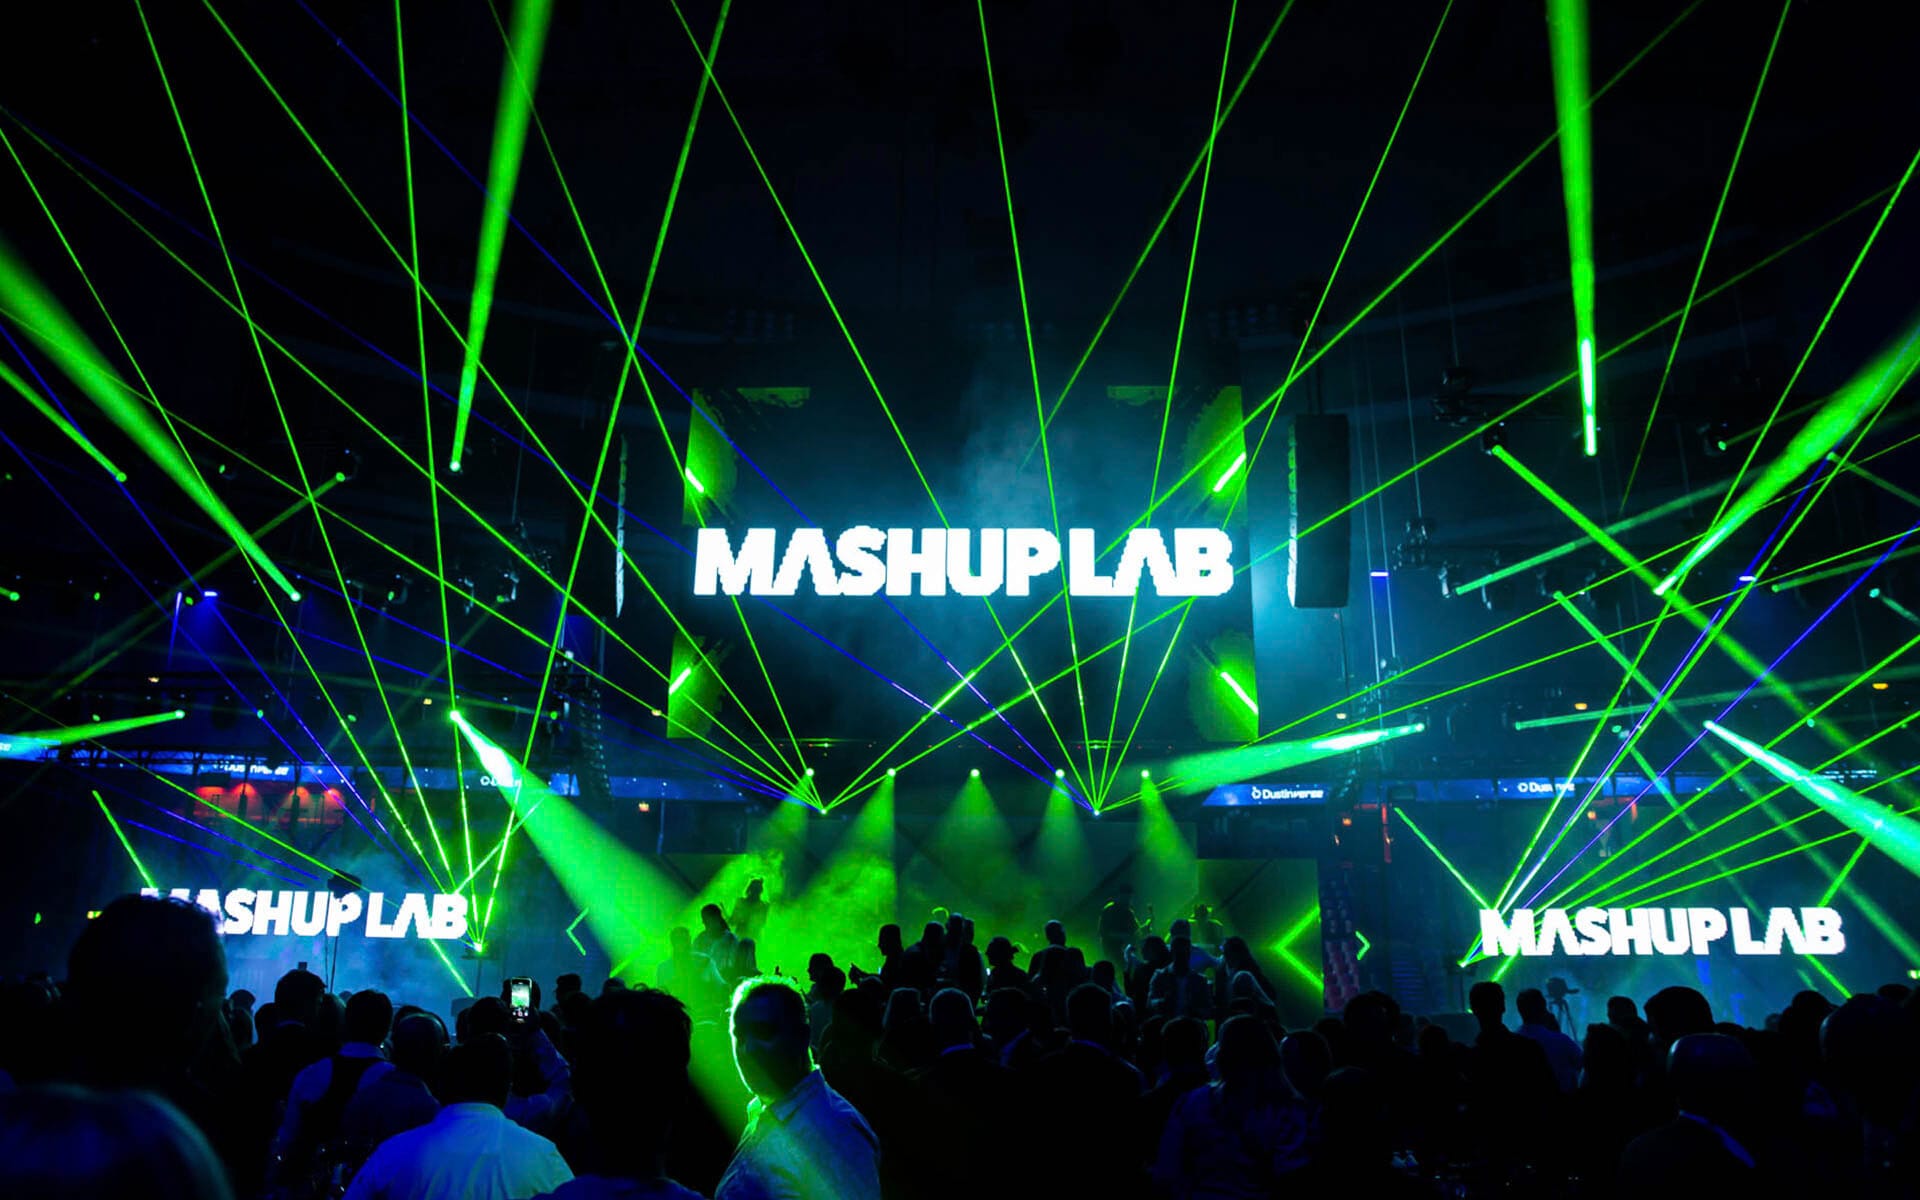 Mashup Lab med lasershow i Globen / Avicii Arena